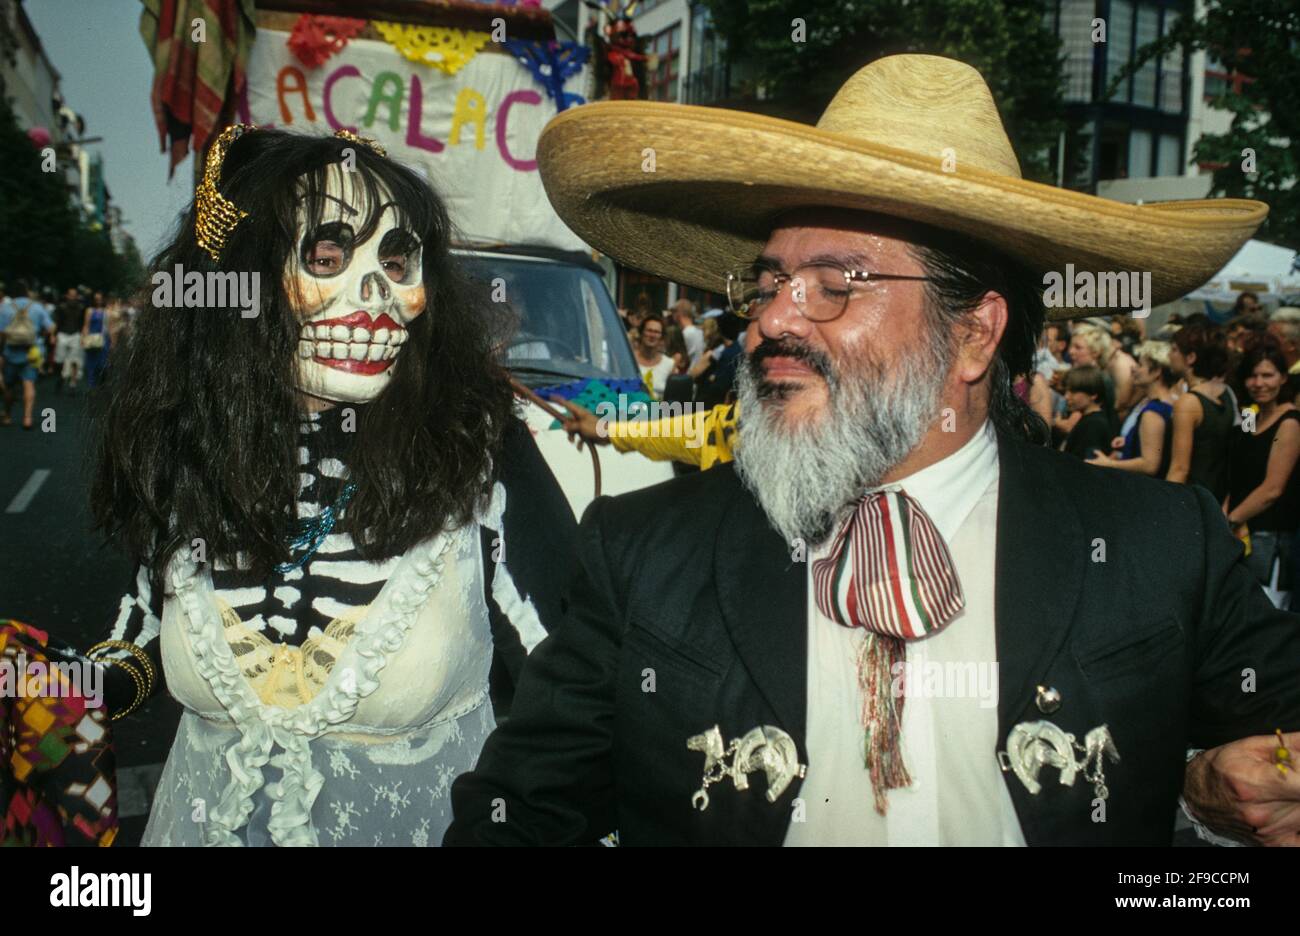 Skeleton und señor mit Sombrero: Mitglieder einer mexikanischen Folkloregruppe beim Karneval der Kulturen von Berlin im Jahr 2000 Stockfoto